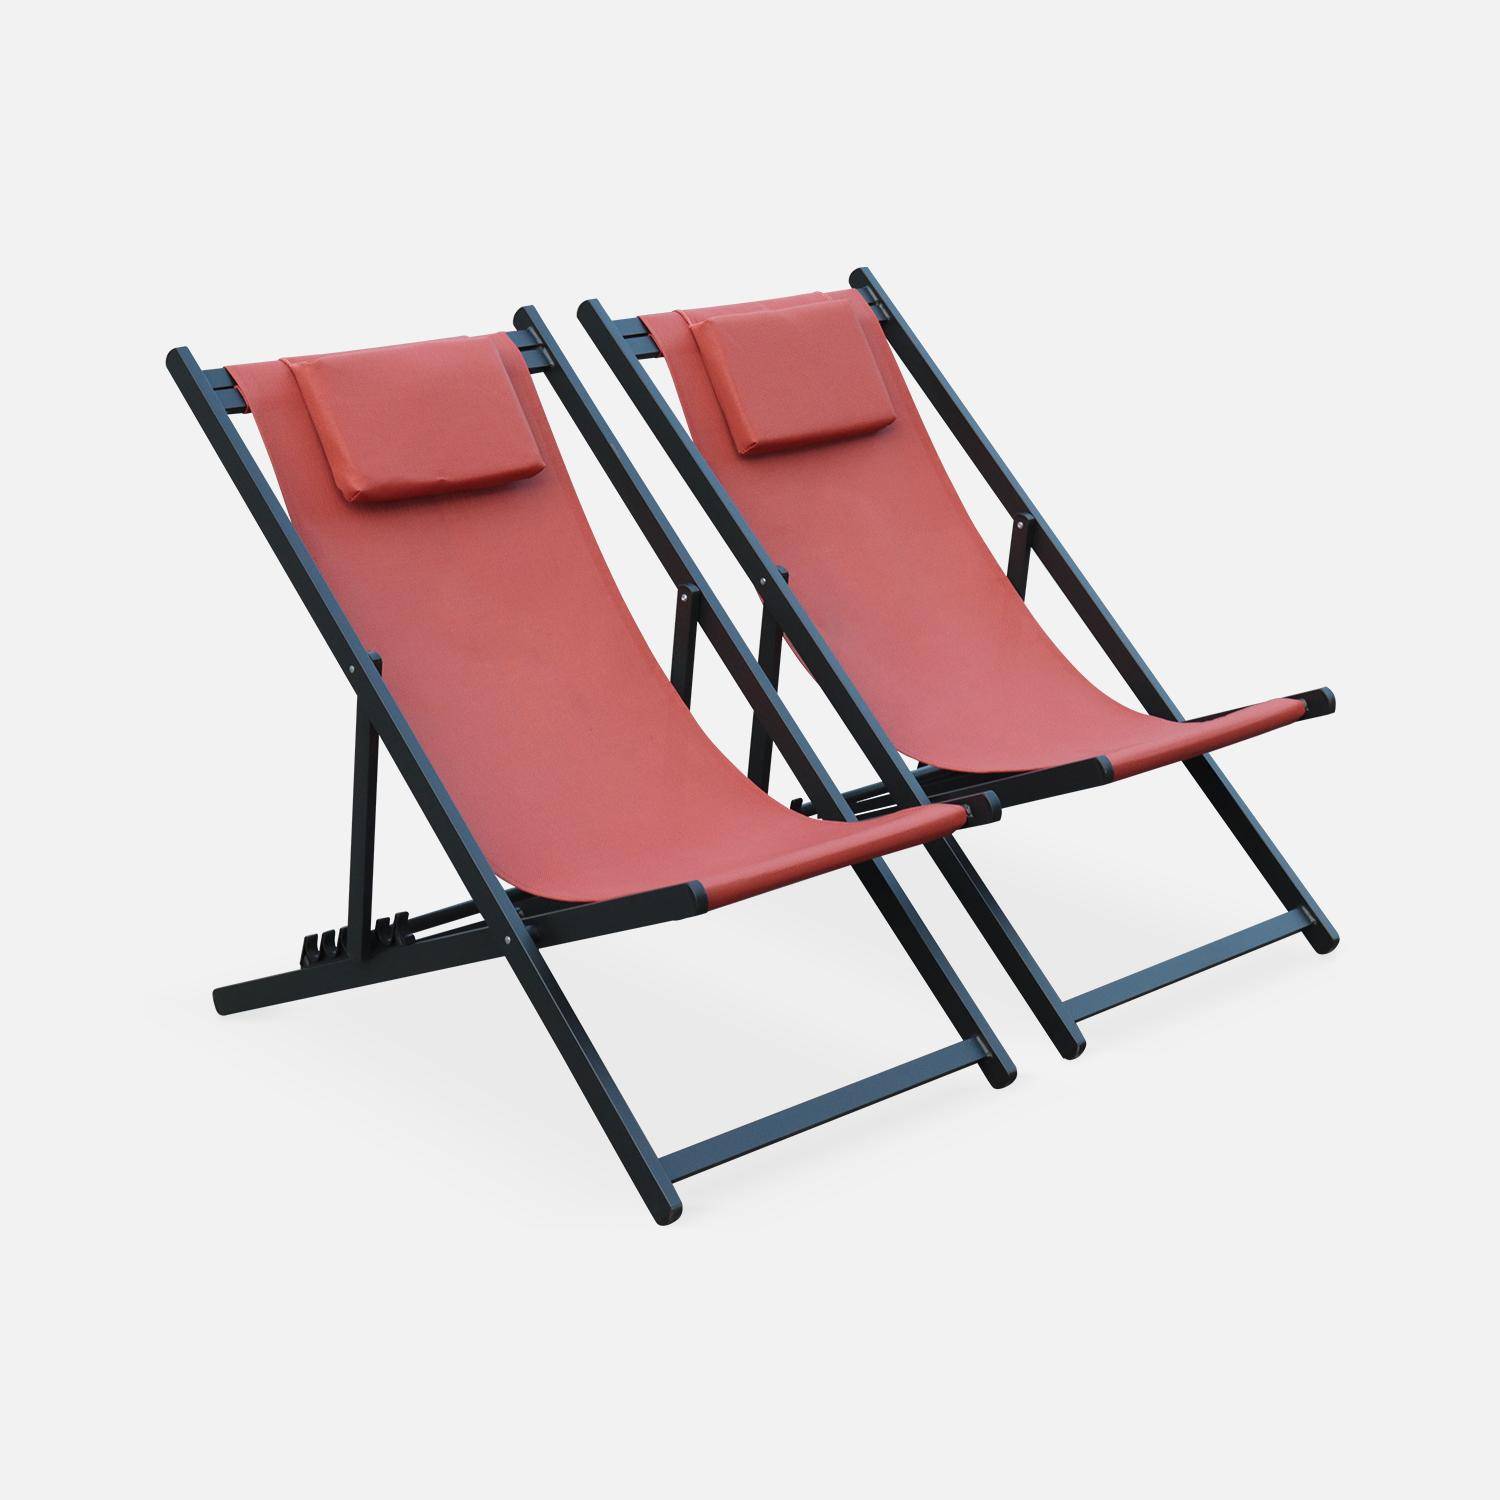 Juego de 2 sillas para tomar sol - Gaia terracota - Aluminio antracita y textileno terracota con reposacabezas.,sweeek,Photo2